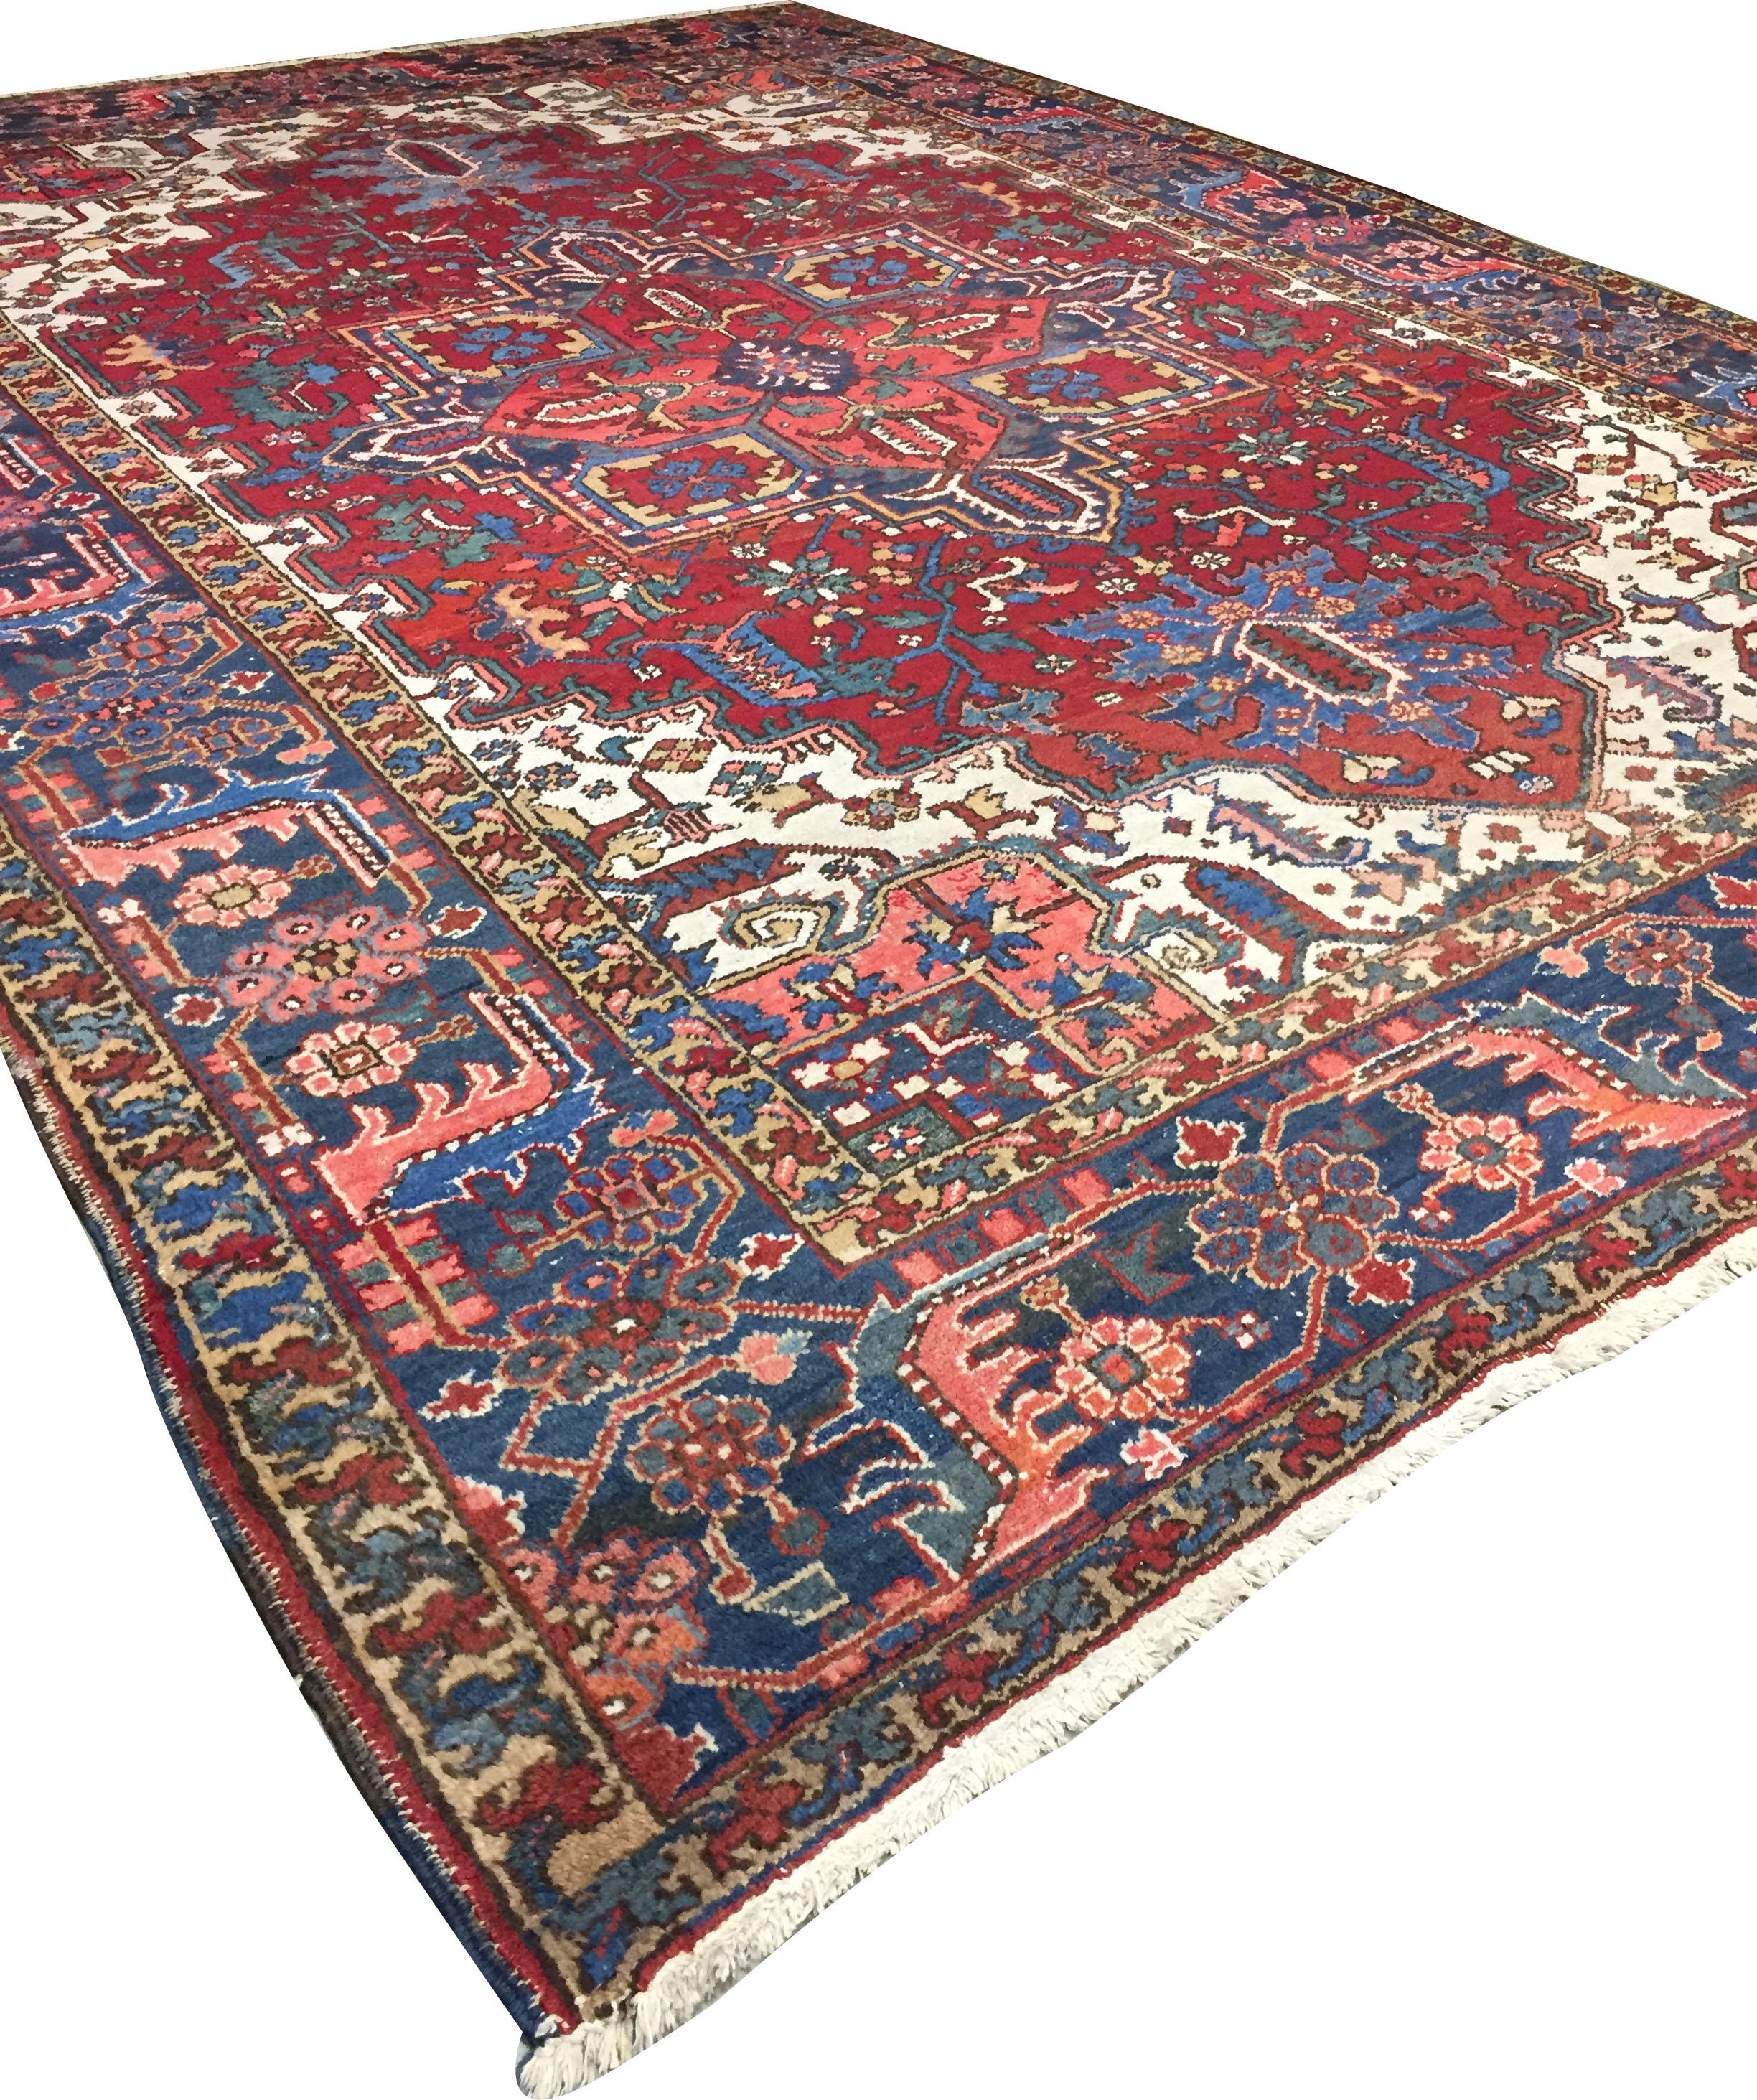 Vintage Persian Heriz Rug 8'1 X 11'5. Aussi perpétuellement à la mode qu'ils sont collectionnables, les tapis traditionnels Heriz de luxe faits à la main sont habilement tissés dans des couleurs vibrantes et des motifs géométriques emphatiques. Le